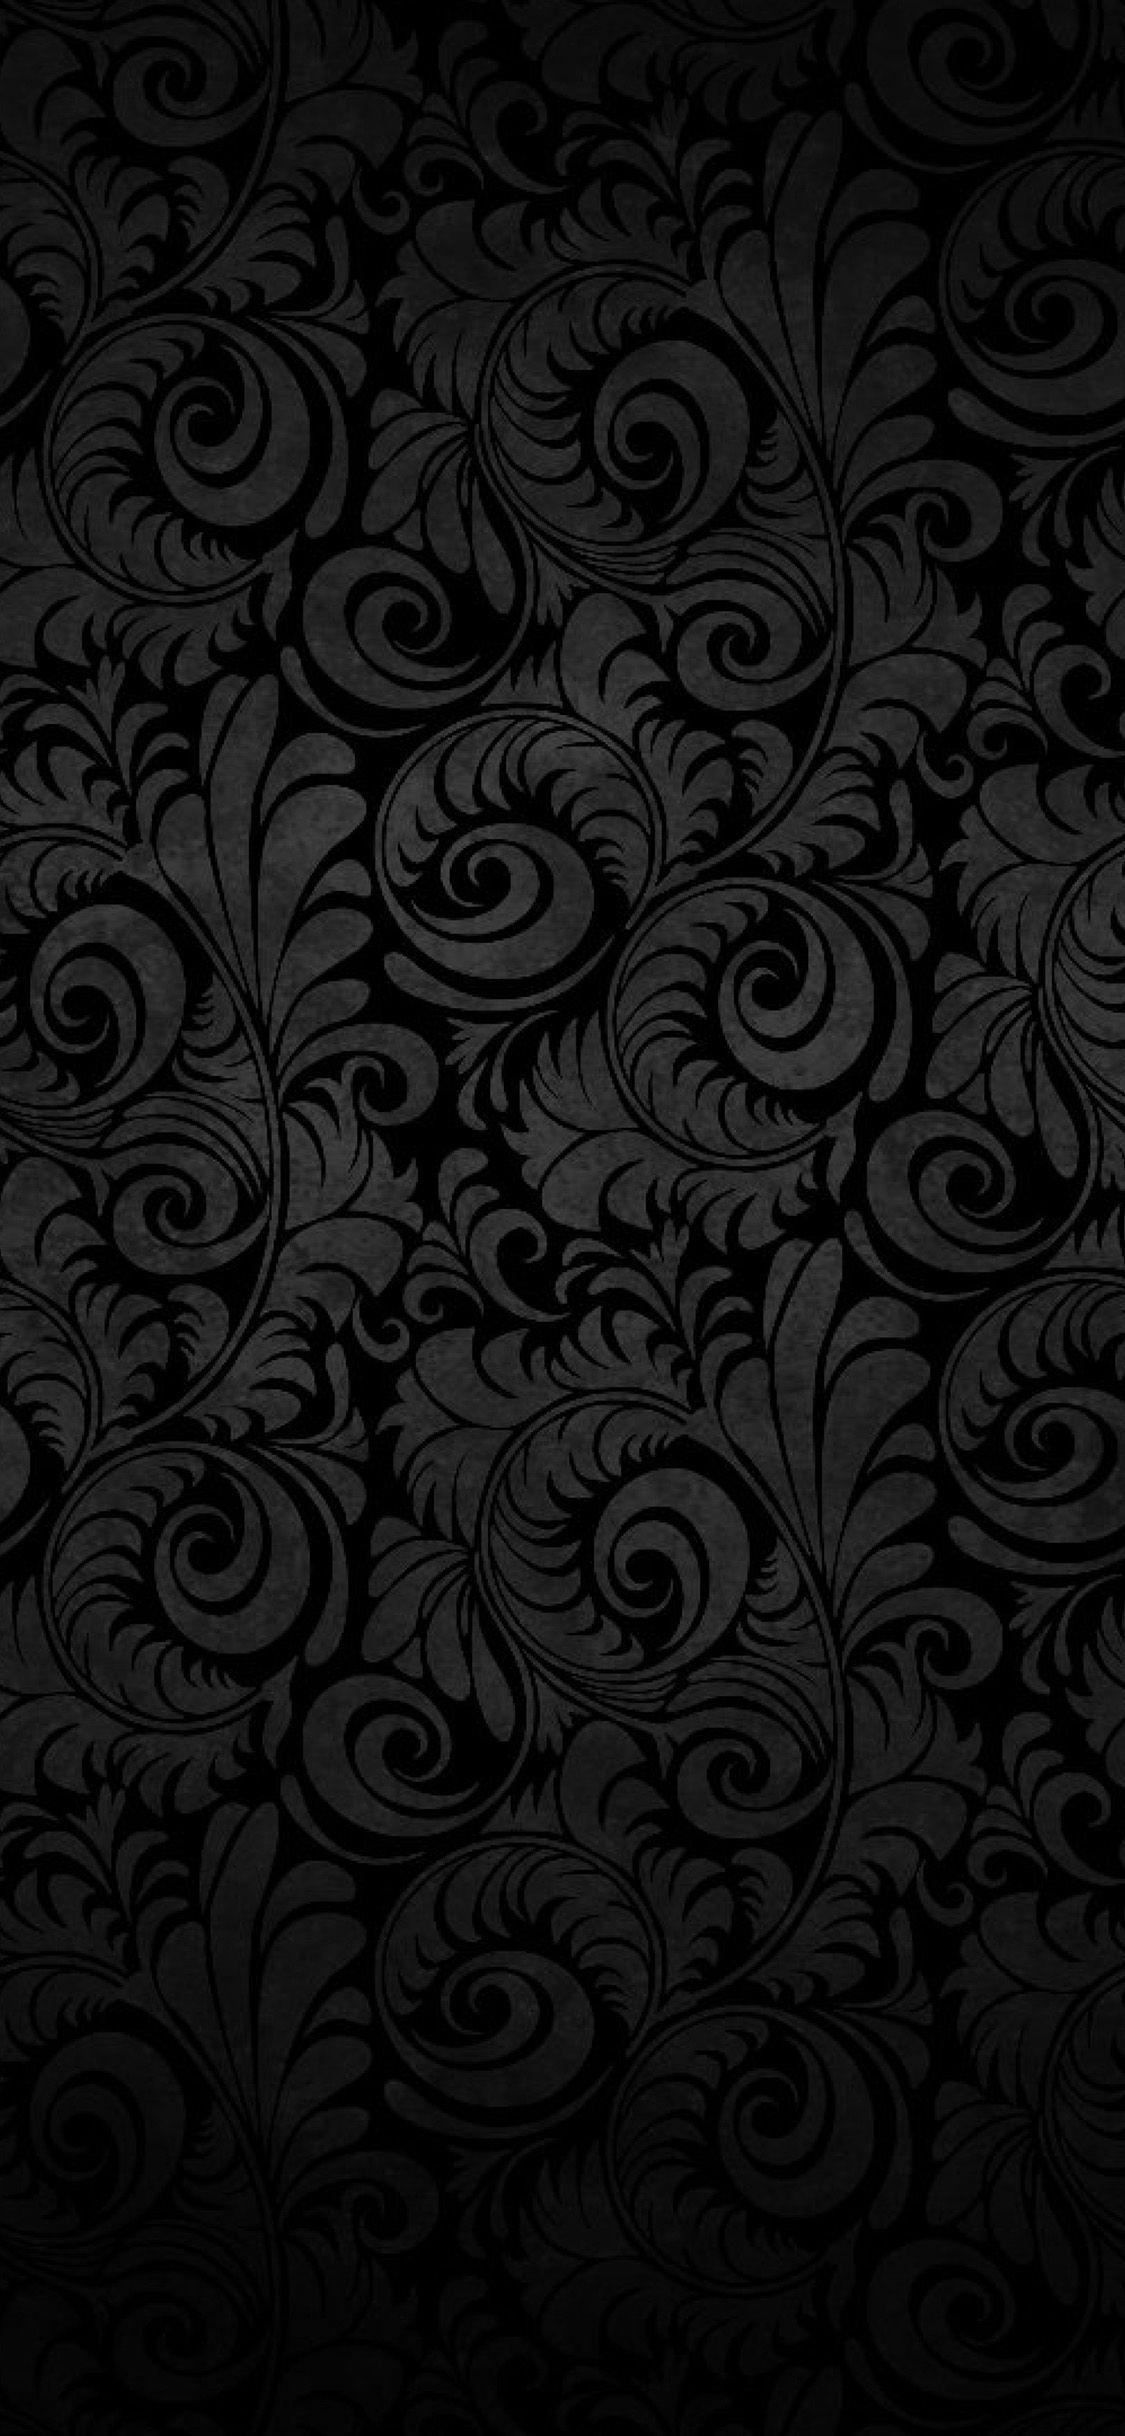 Dark 4K iPhone Wallpapers - Top Free Dark 4K iPhone Backgrounds ...